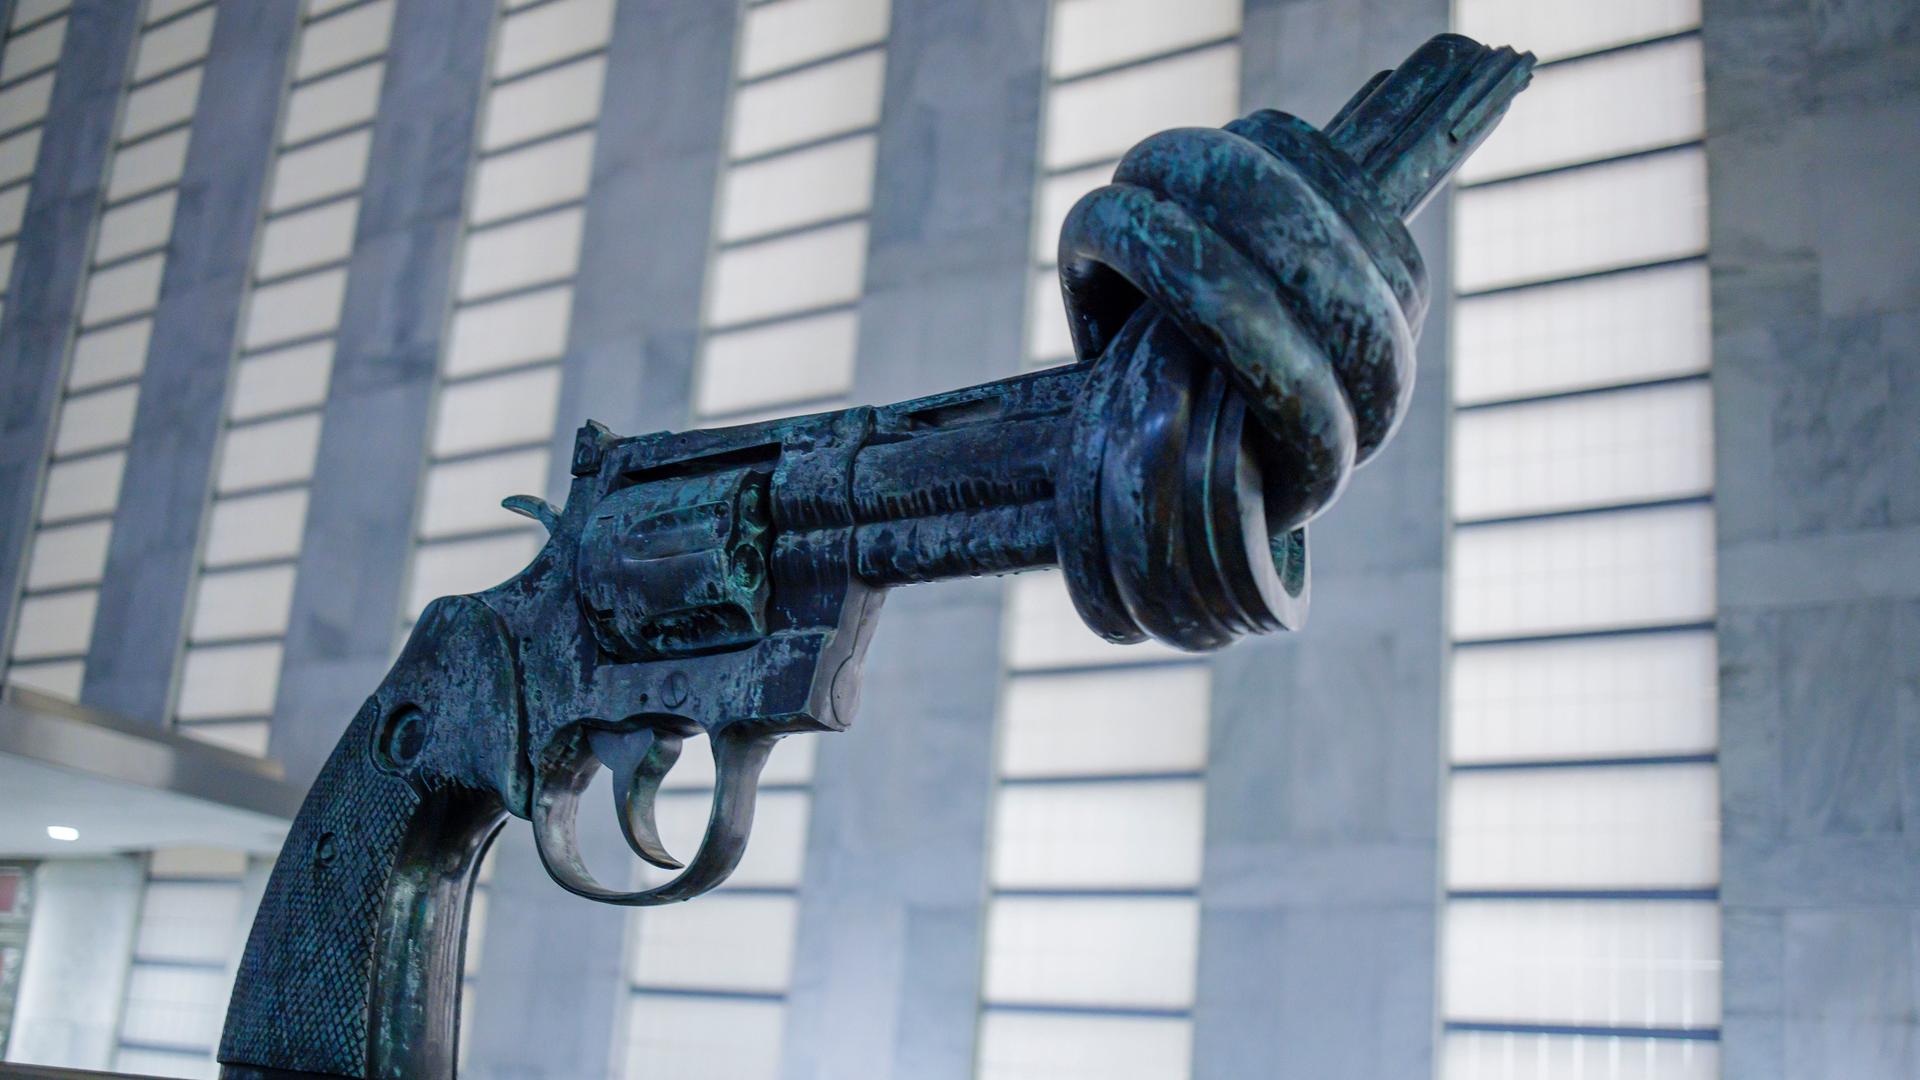 Die Skulptur "Non-violence" vor dem Hauptgebäude der Vereinten Nationen in New York zeigt eine verknotete Waffe.